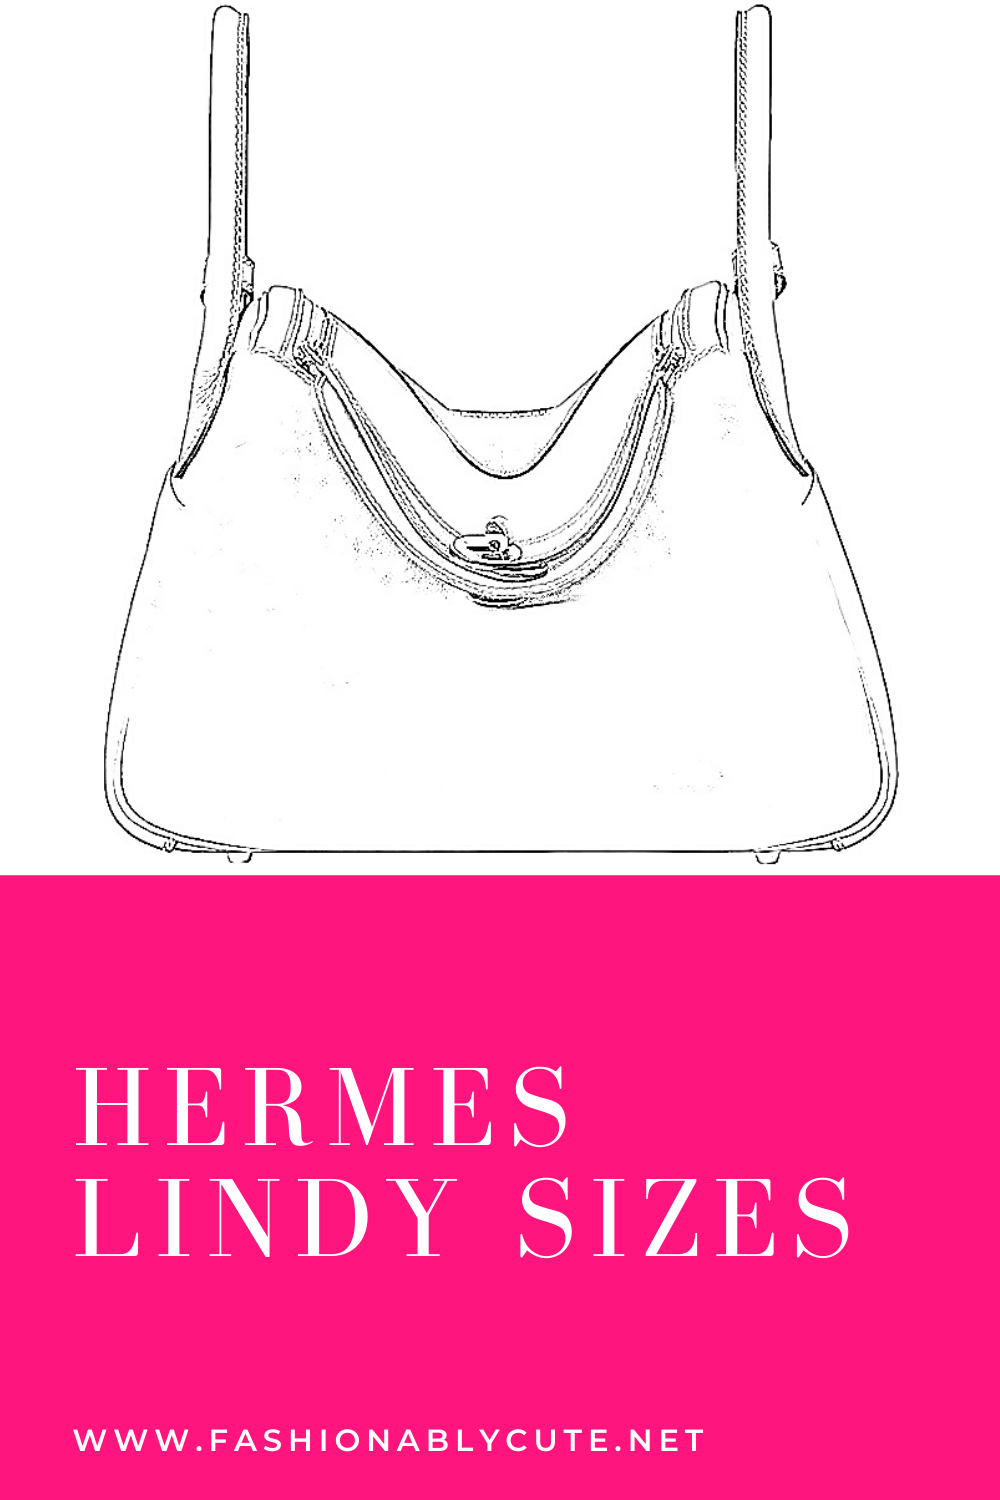 HERMÈS LINDY SIZE COMPARISON - Lindy 26 vs. Mini Lindy